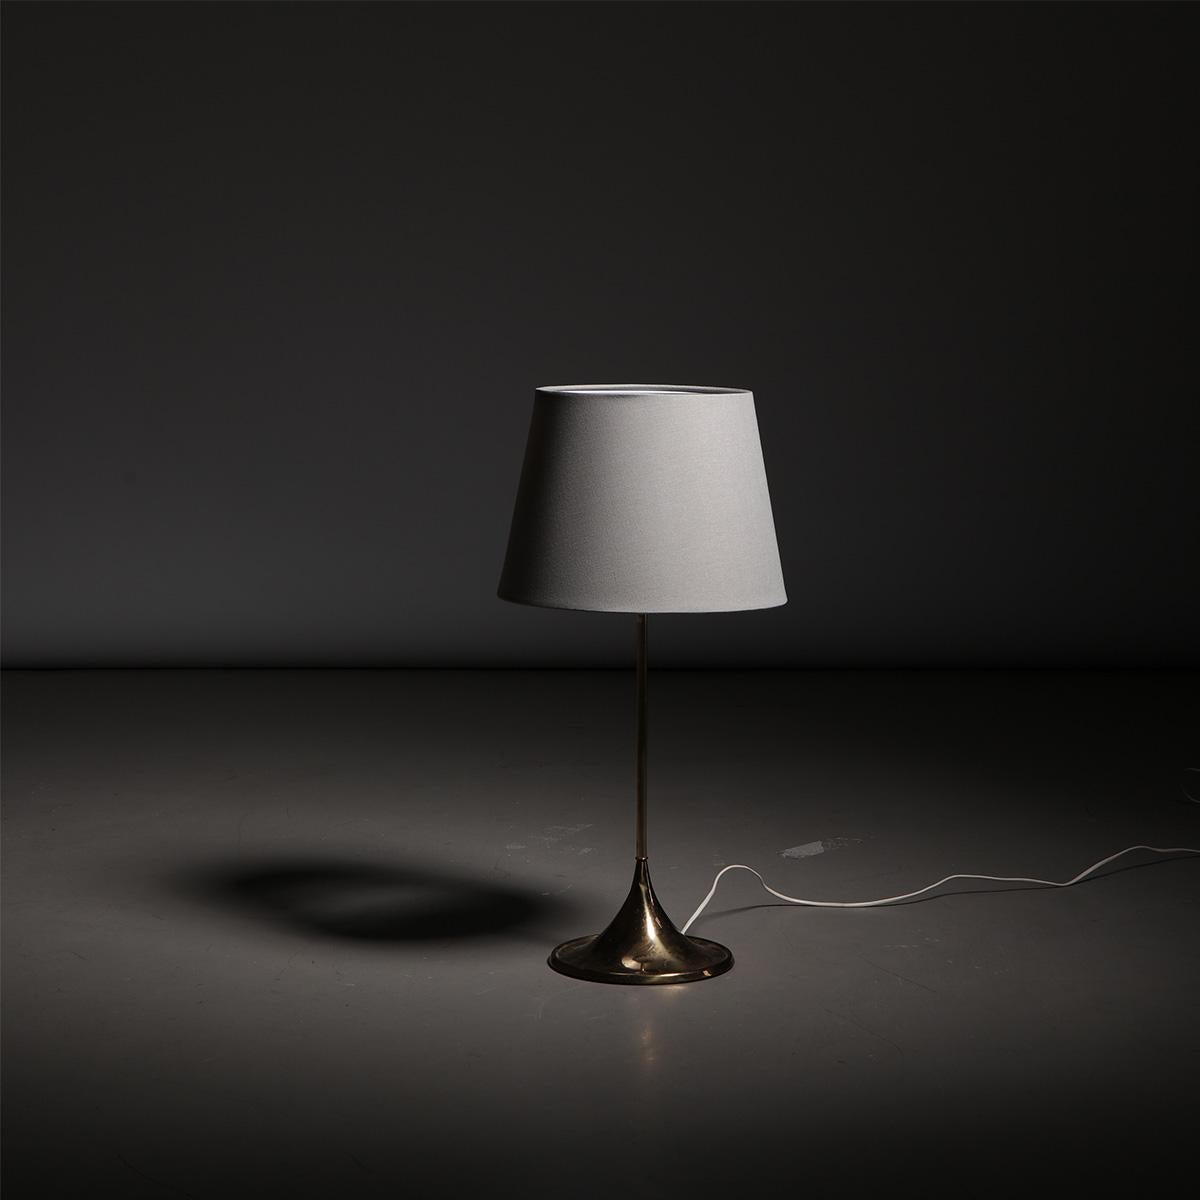 Lampe de table suédoise sculpturale en laiton, modèle B-024, conçue par Alf Svensson et Yngvar Sandström et fabriquée par Bergboms en Suède, années 1960.

Cette élégante et rare lampe de table suédoise en laiton a été conçue par les brillants